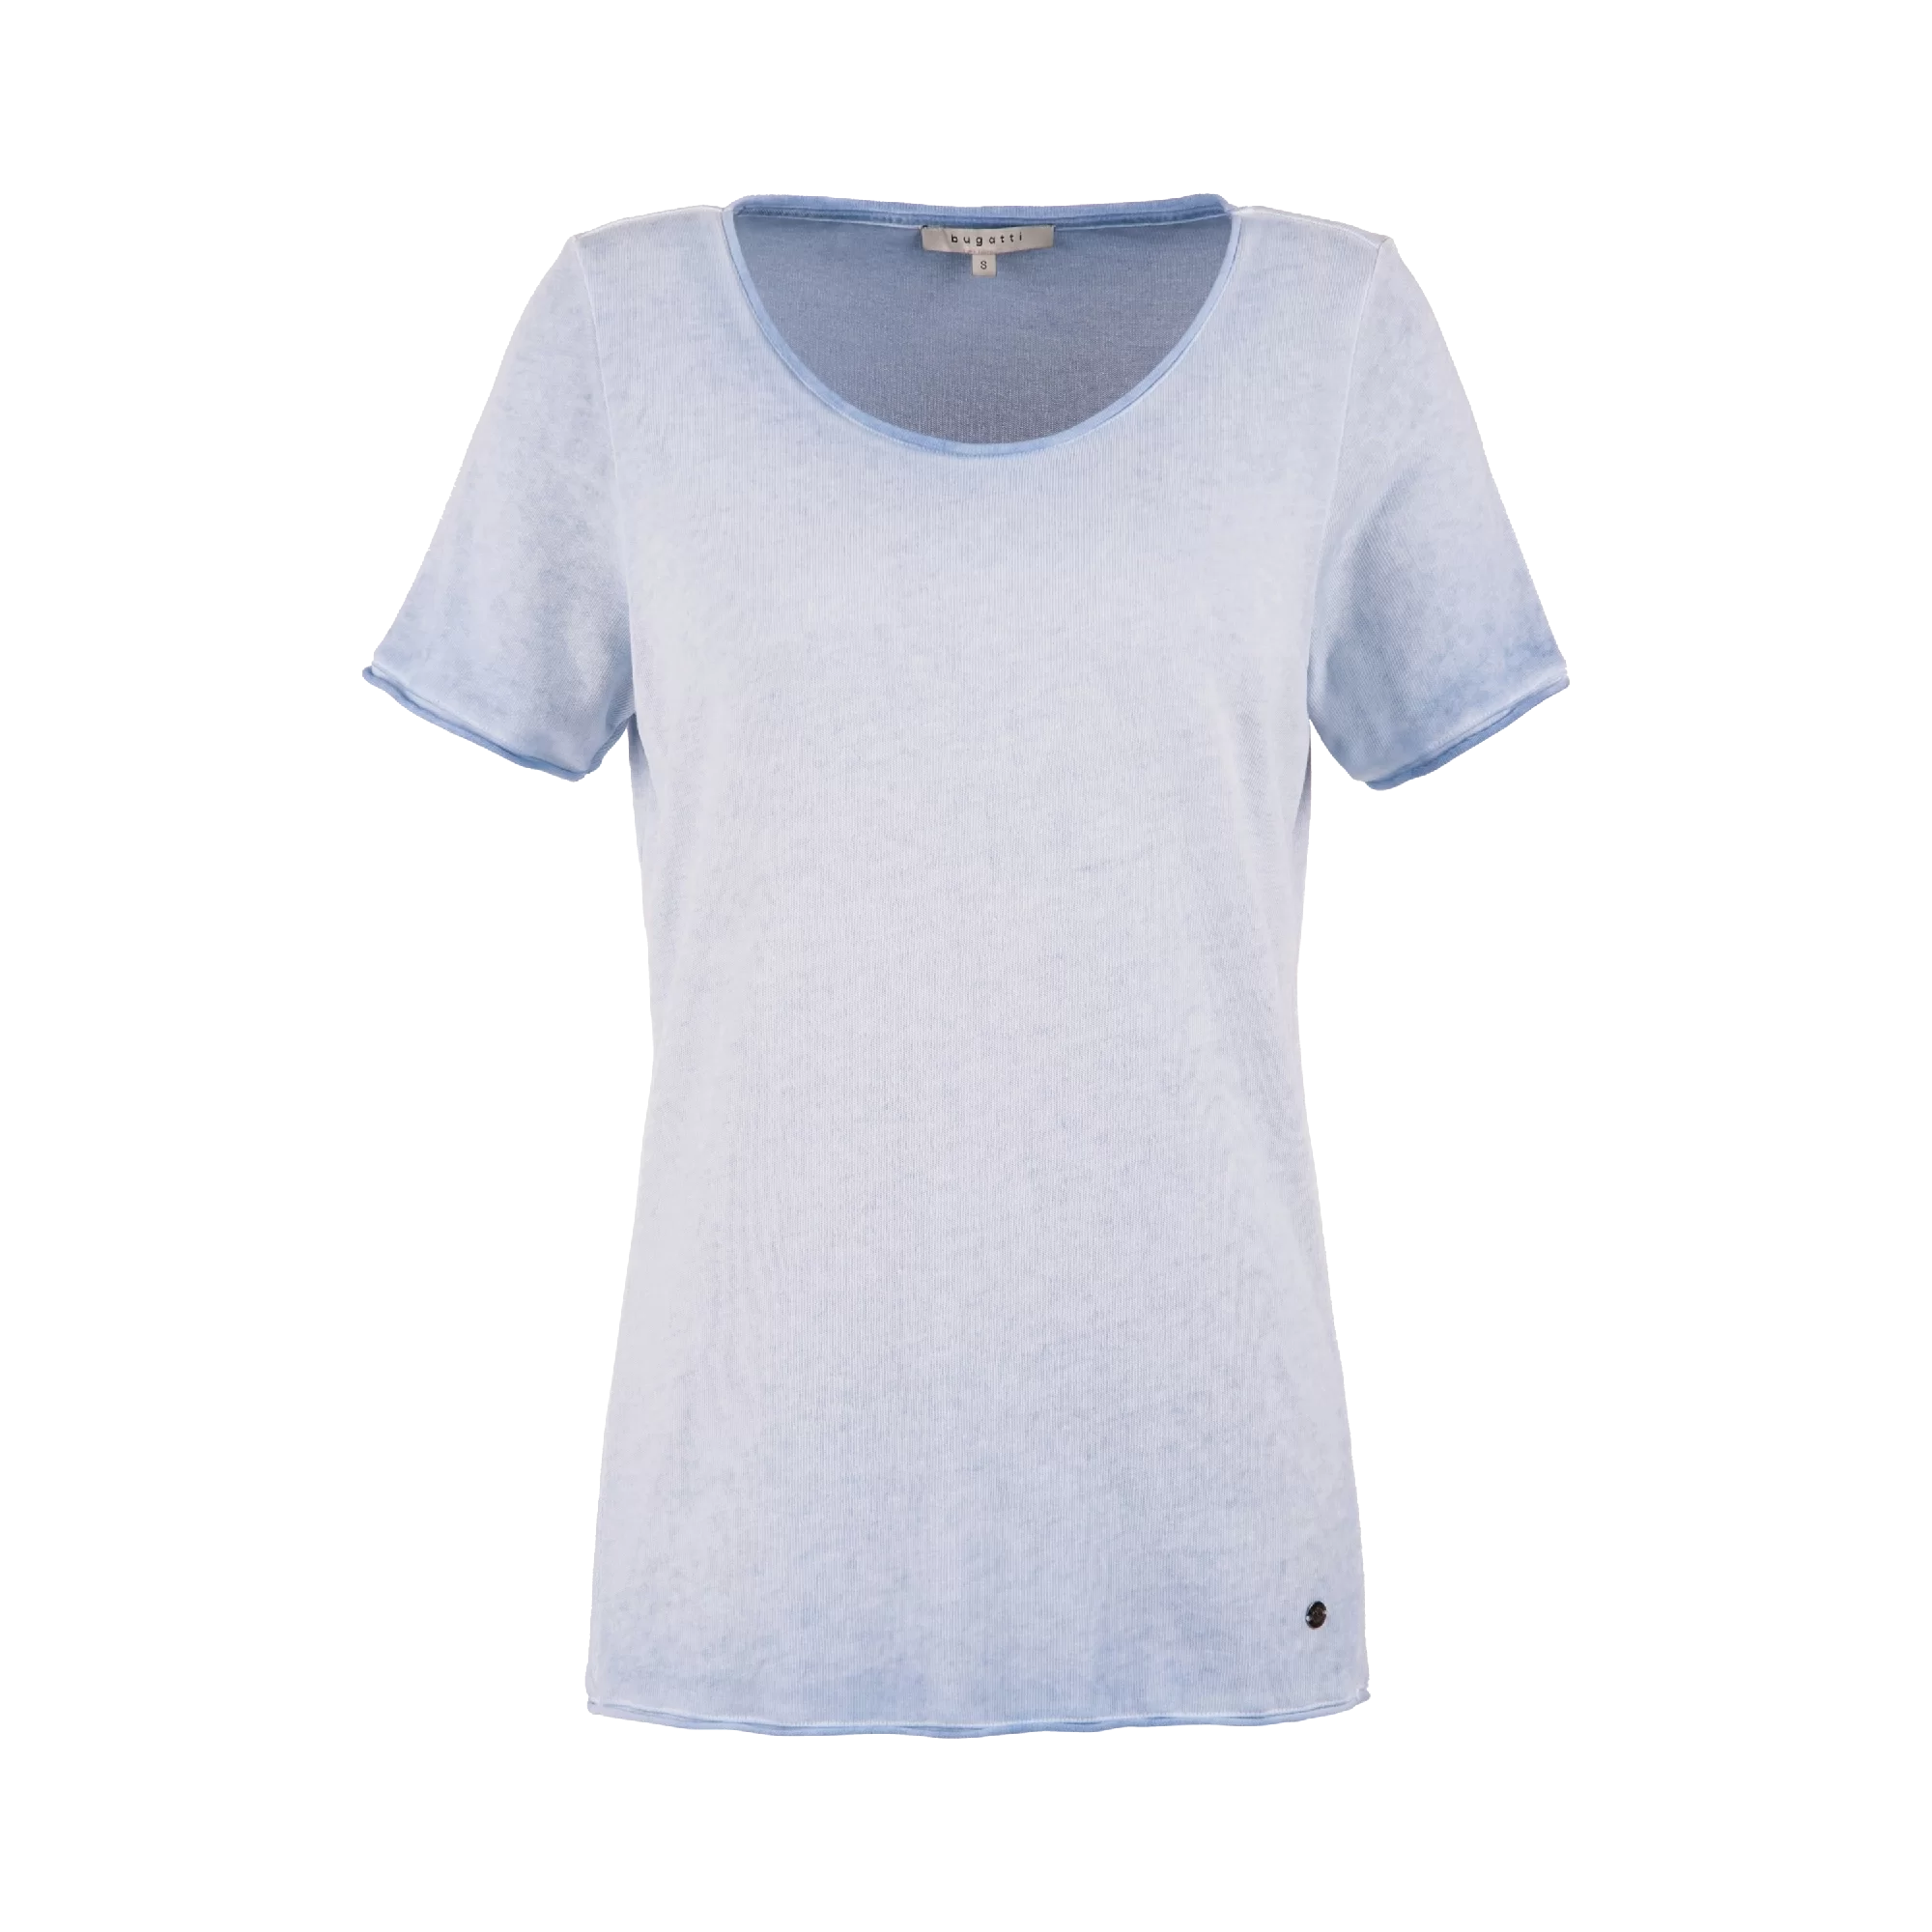 Rundhals T-shirt mit leicht verwaschener Optik in hellblau | bugatti